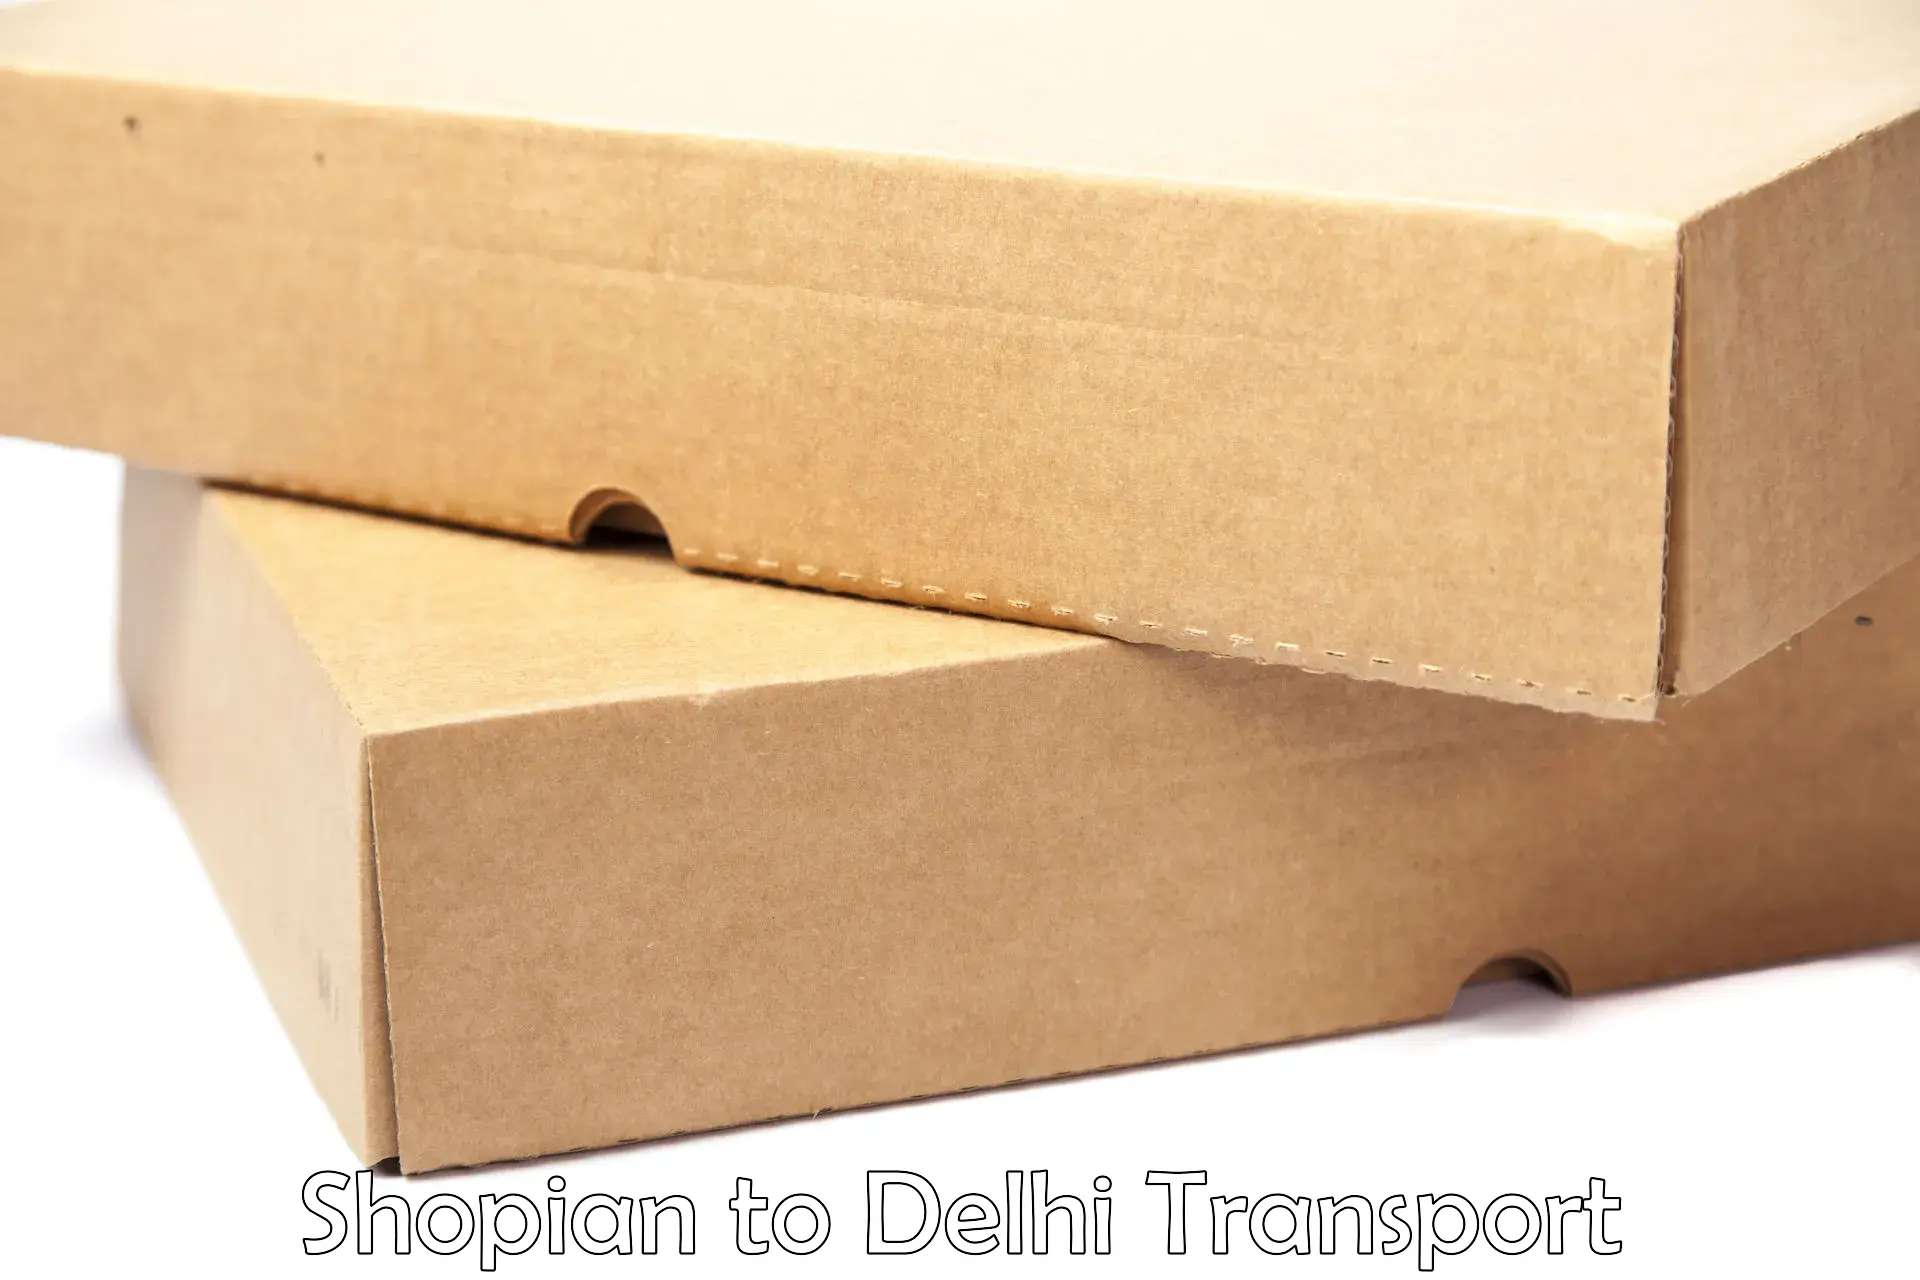 Nearest transport service Shopian to Ashok Vihar